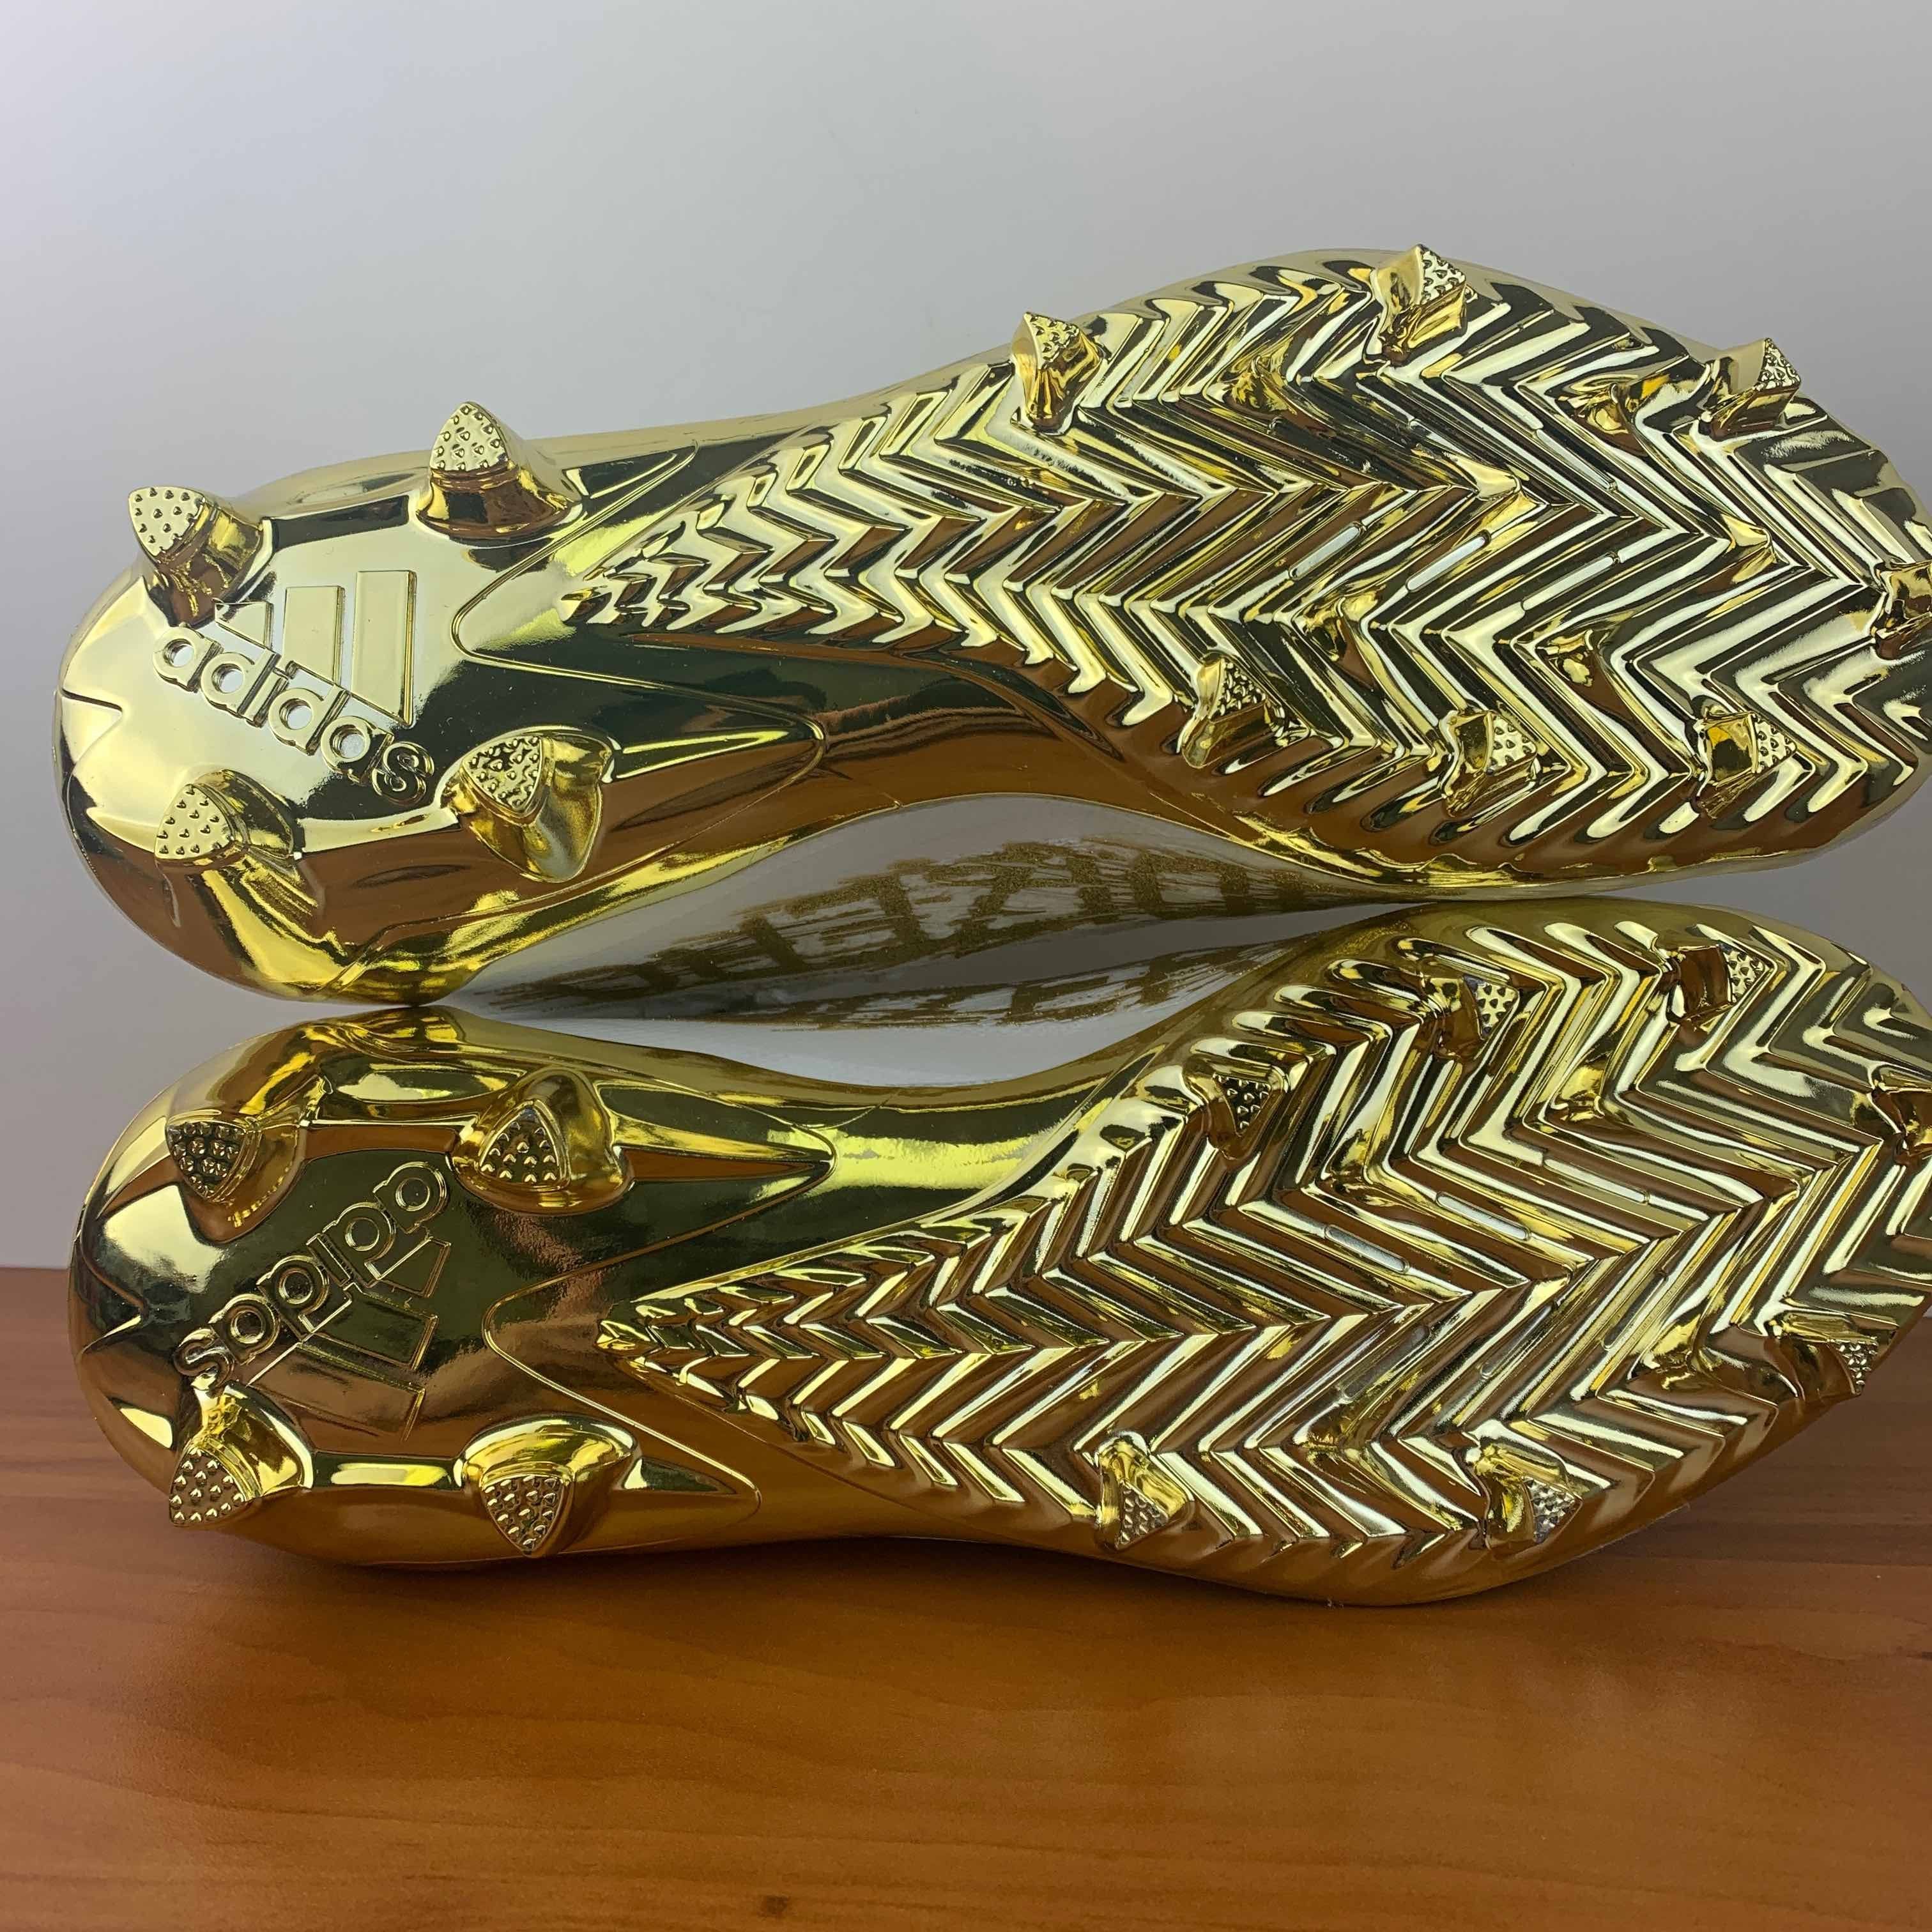 Adidas Adizero Cleats Primeknit White Gold Metallic Size US 12 / EU 45 - 3 Thumbnail